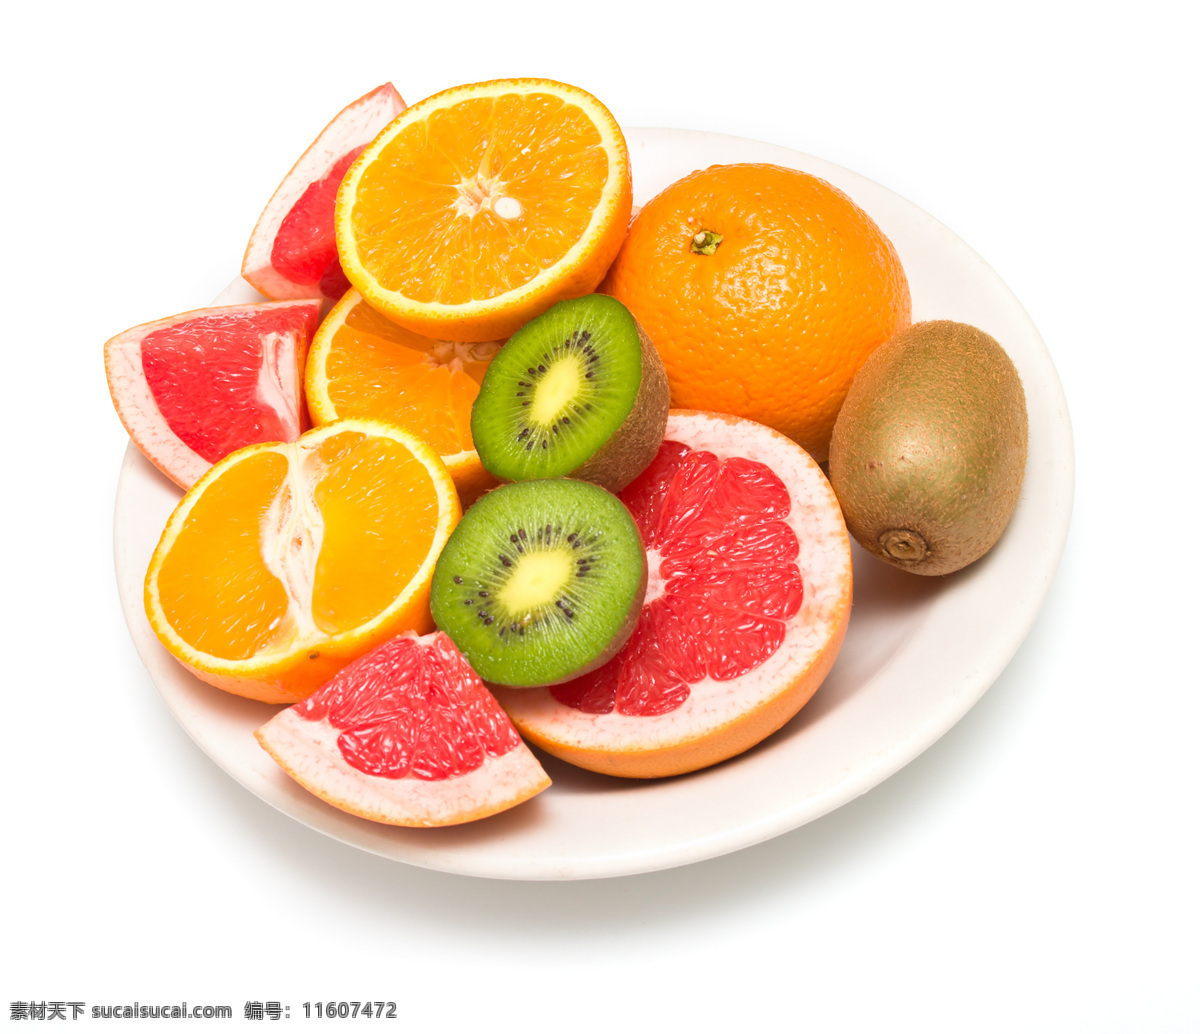 水果盘 果蔬 营养 维生素 健康美食 橙子 猕猴桃 水果 生物世界